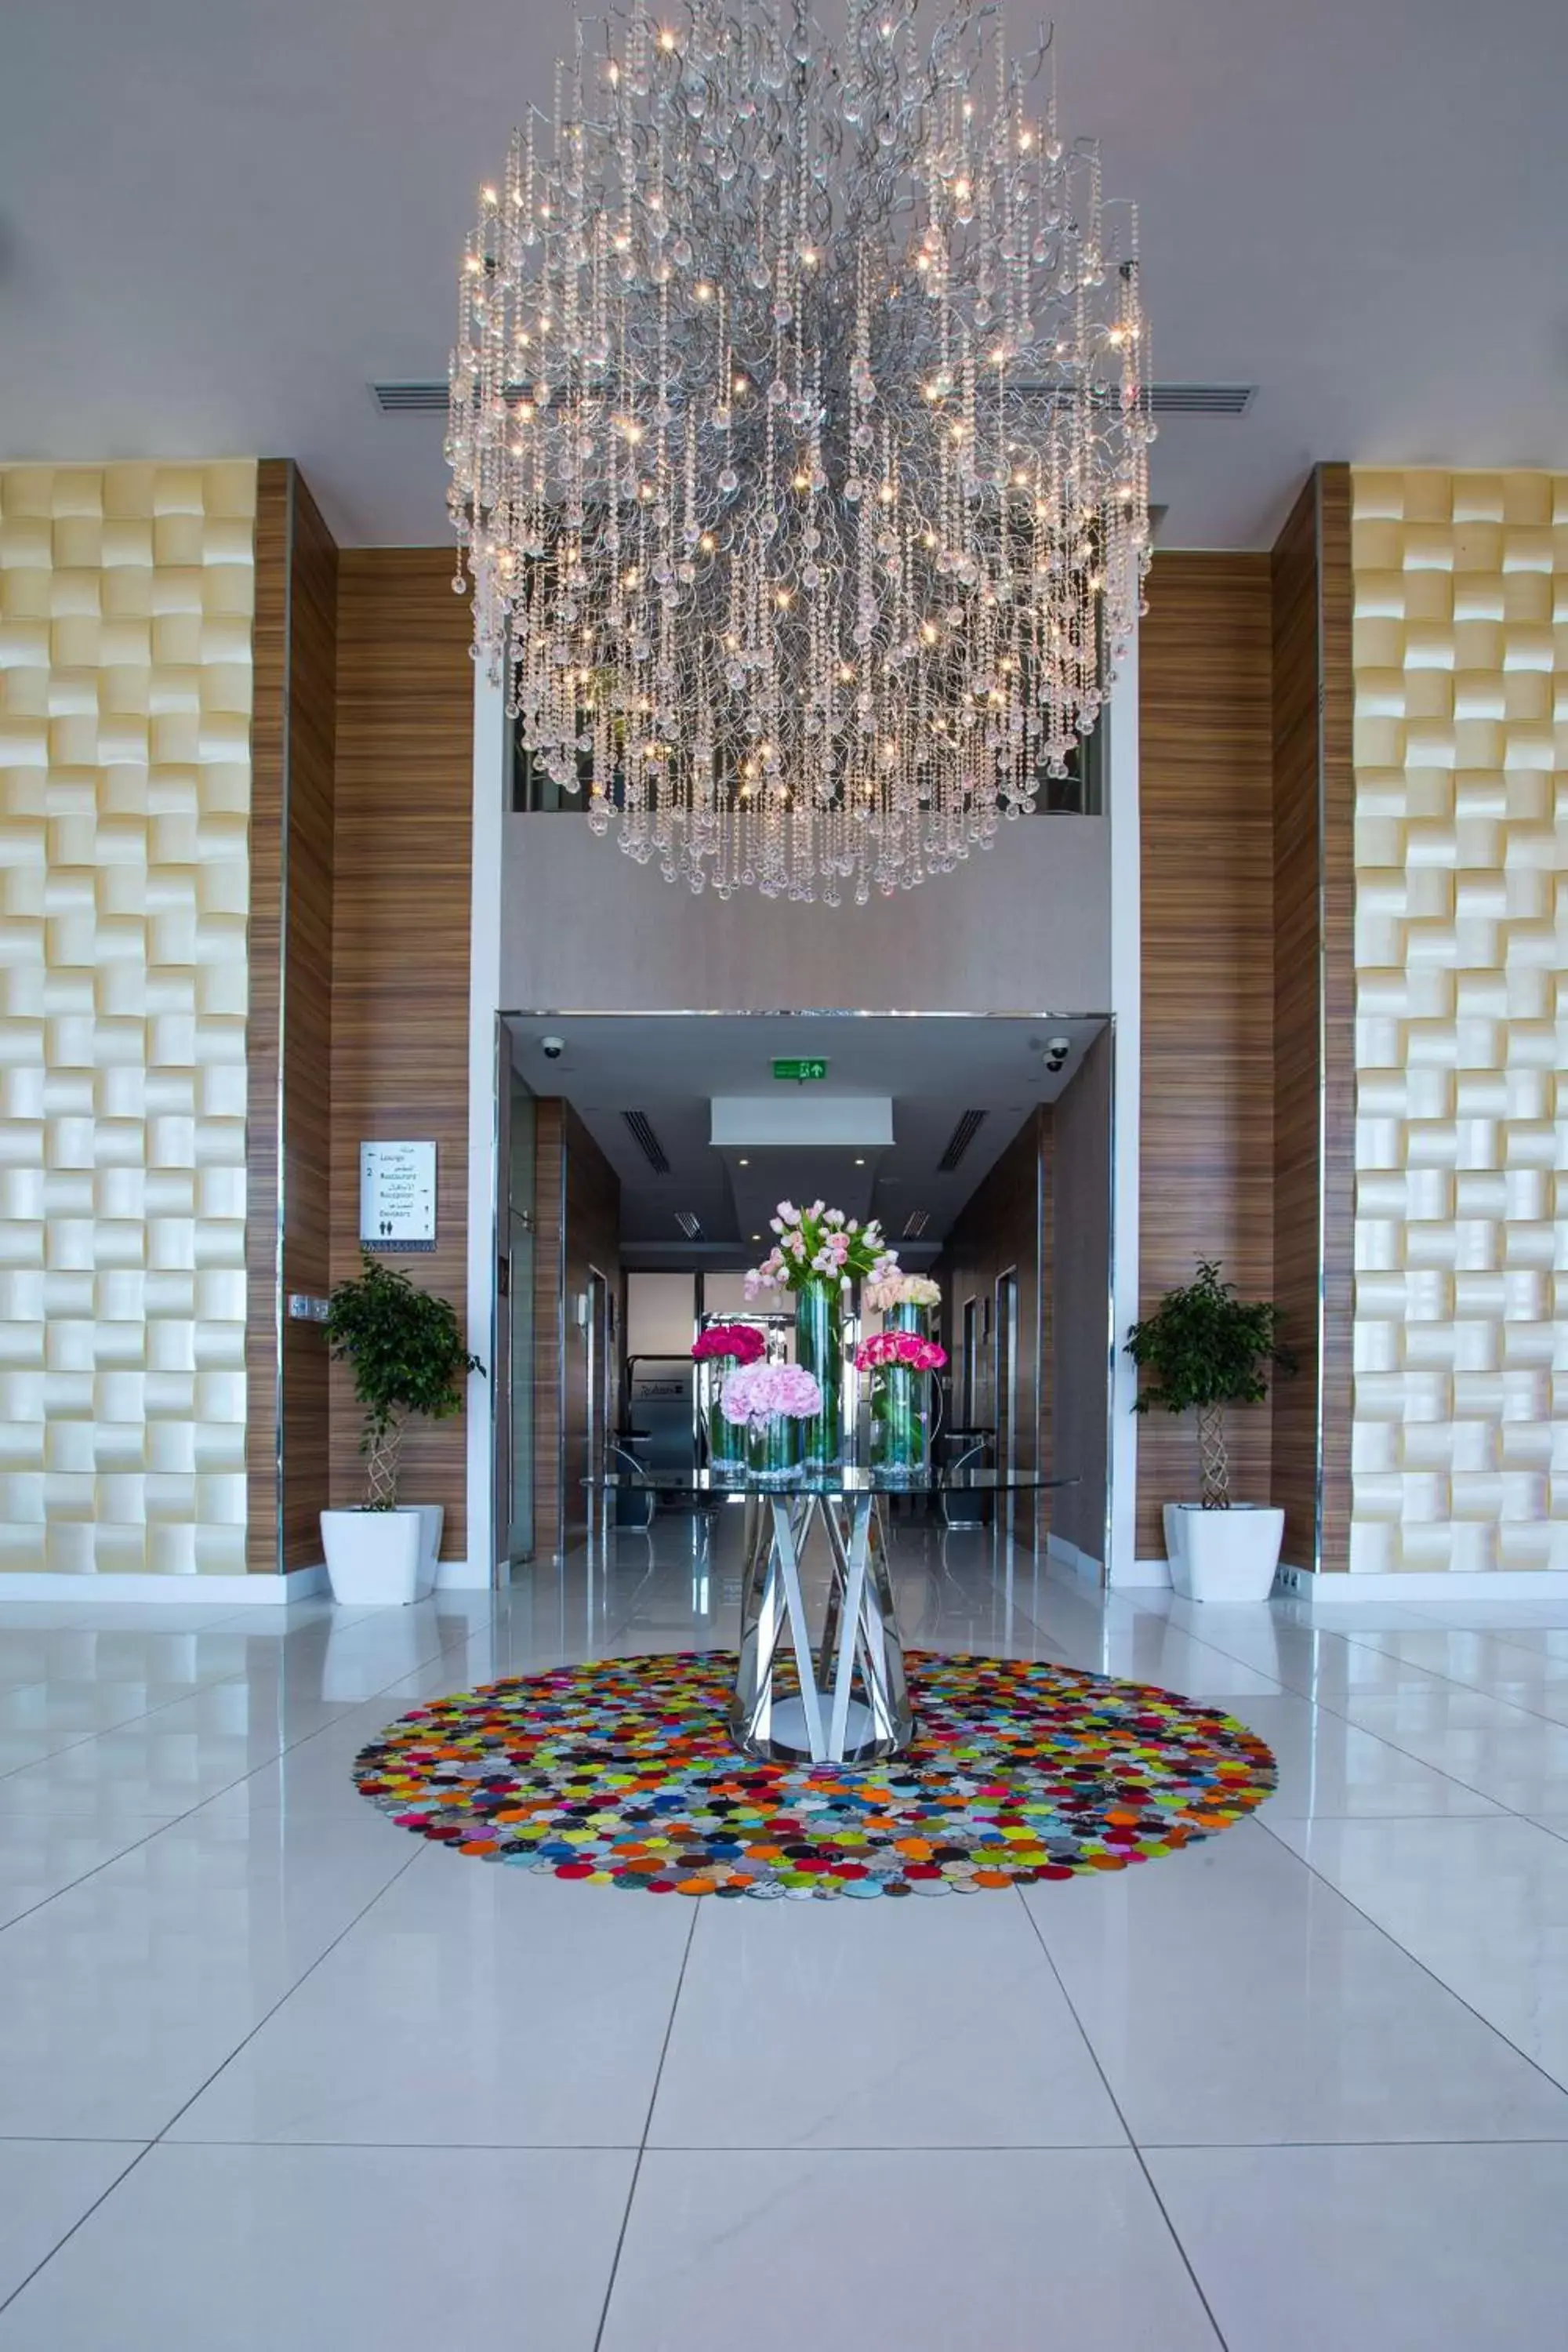 Lobby or reception, Lobby/Reception in Radisson Blu Plaza Jeddah